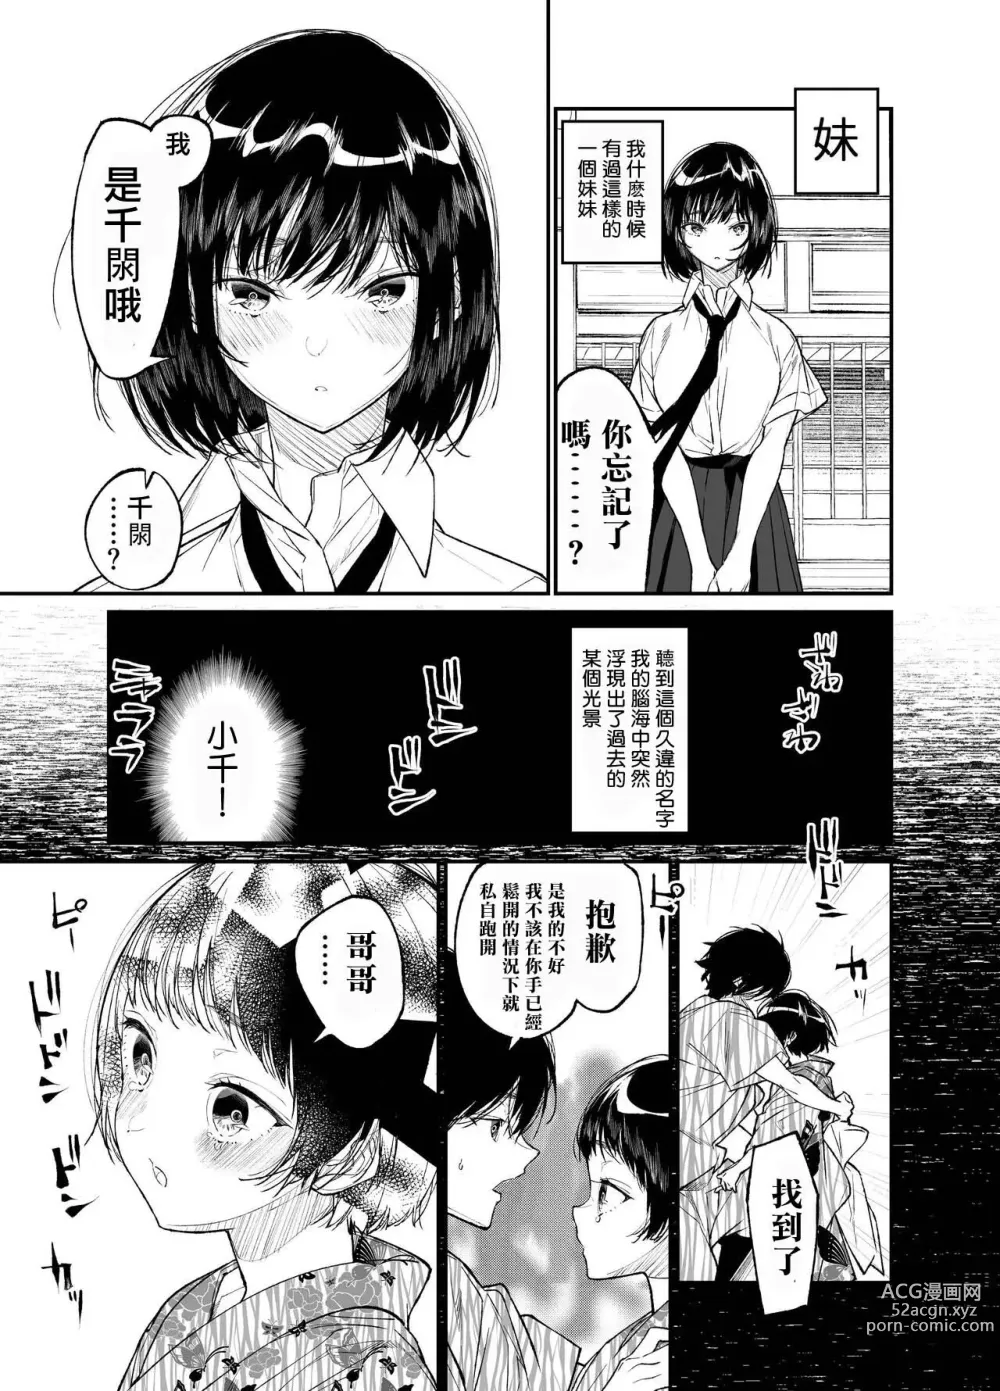 Page 5 of doujinshi Natsu, Shoujo wa Tonde, Hi ni Iru.